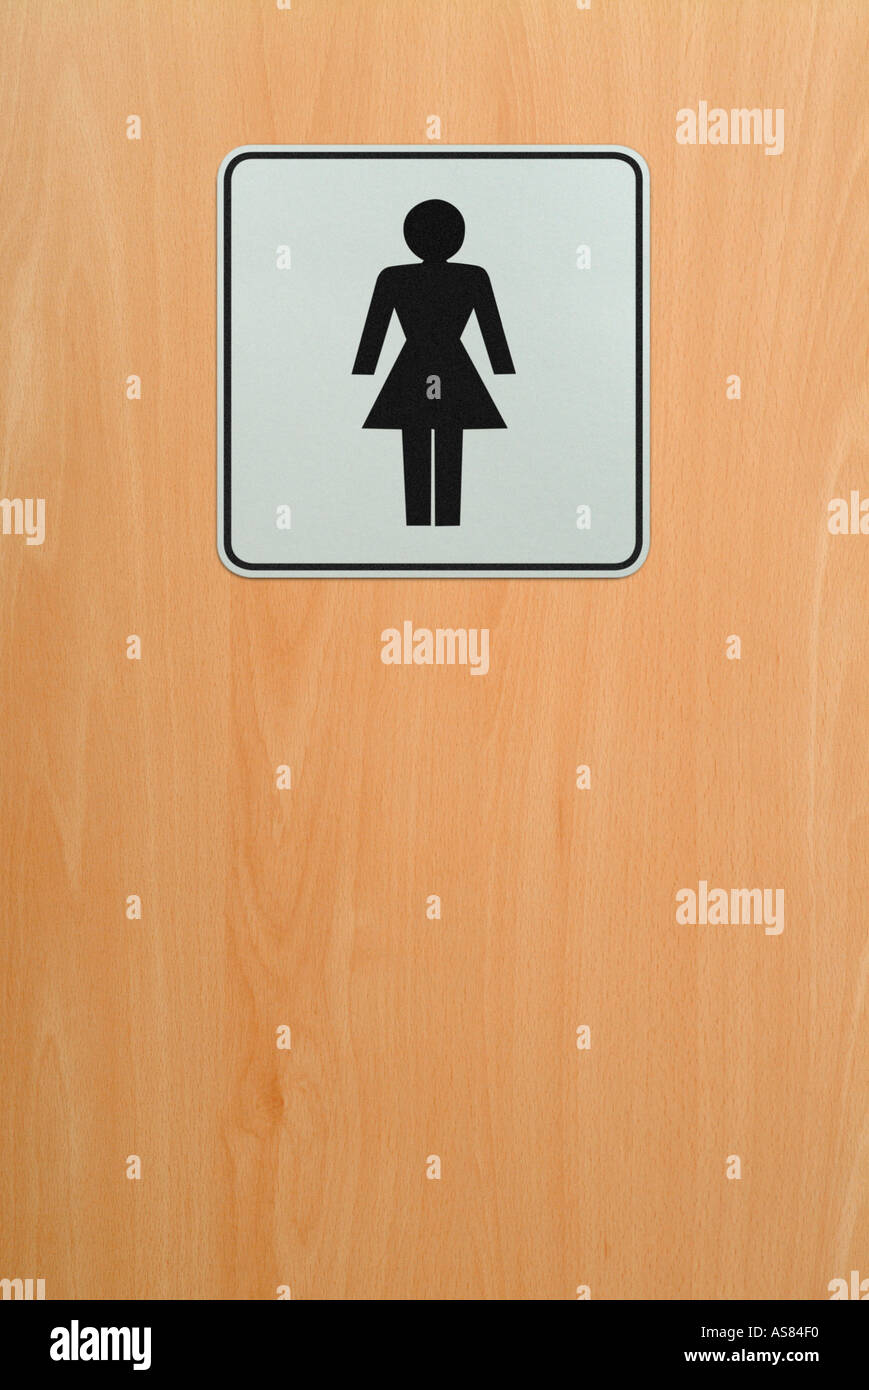 ladies toilet door sign Stock Photo